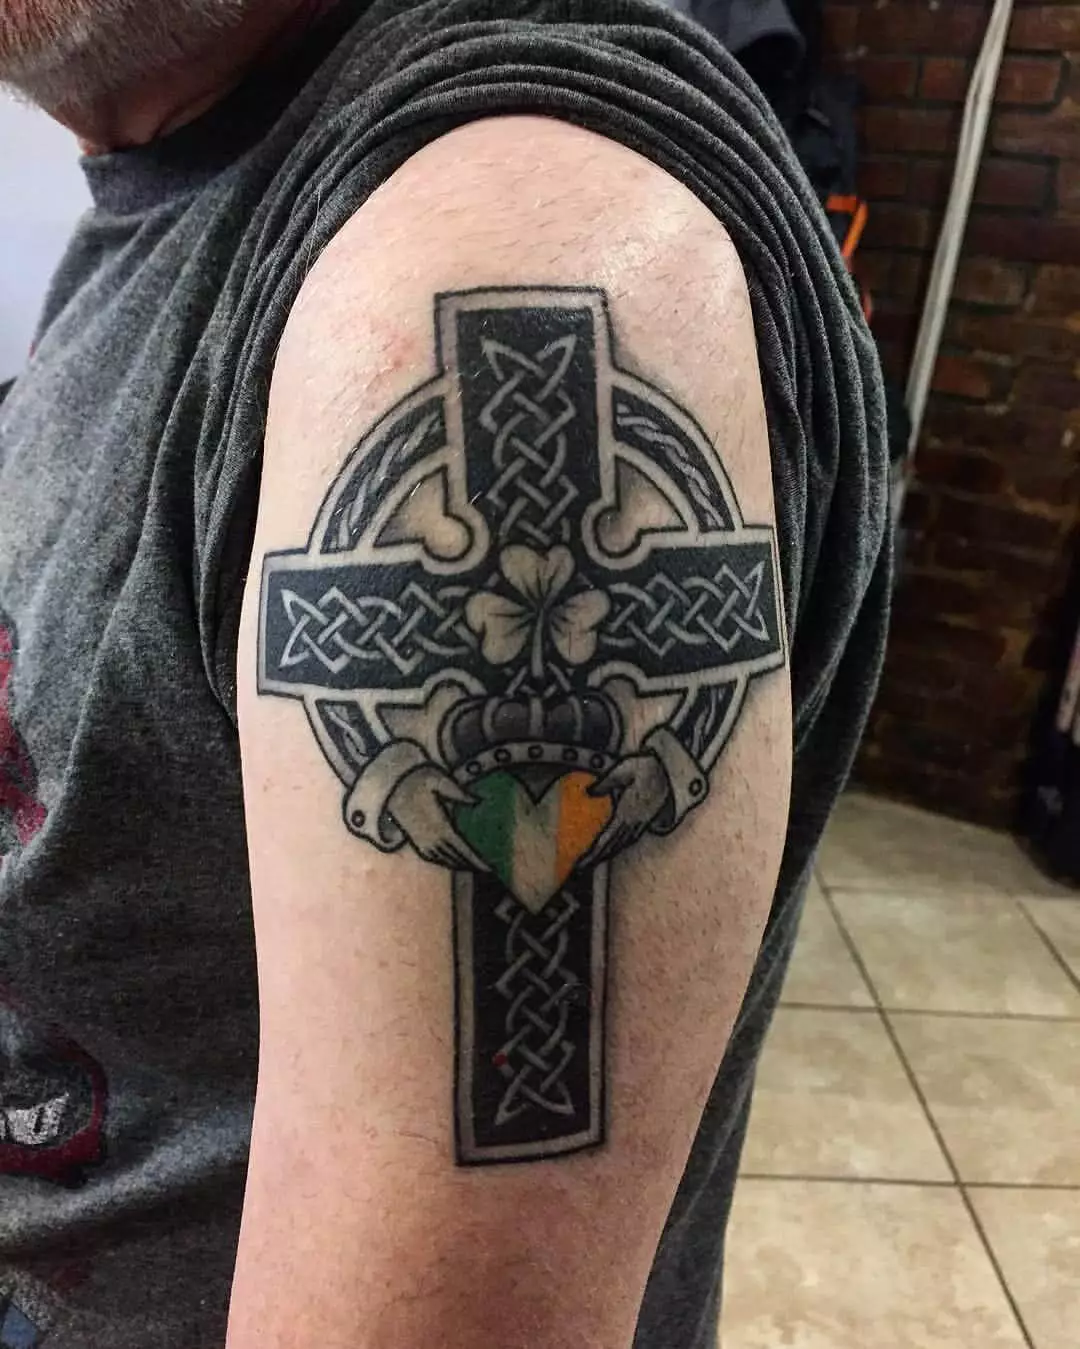 Keltisches Kreuz mit Irischer Fahne